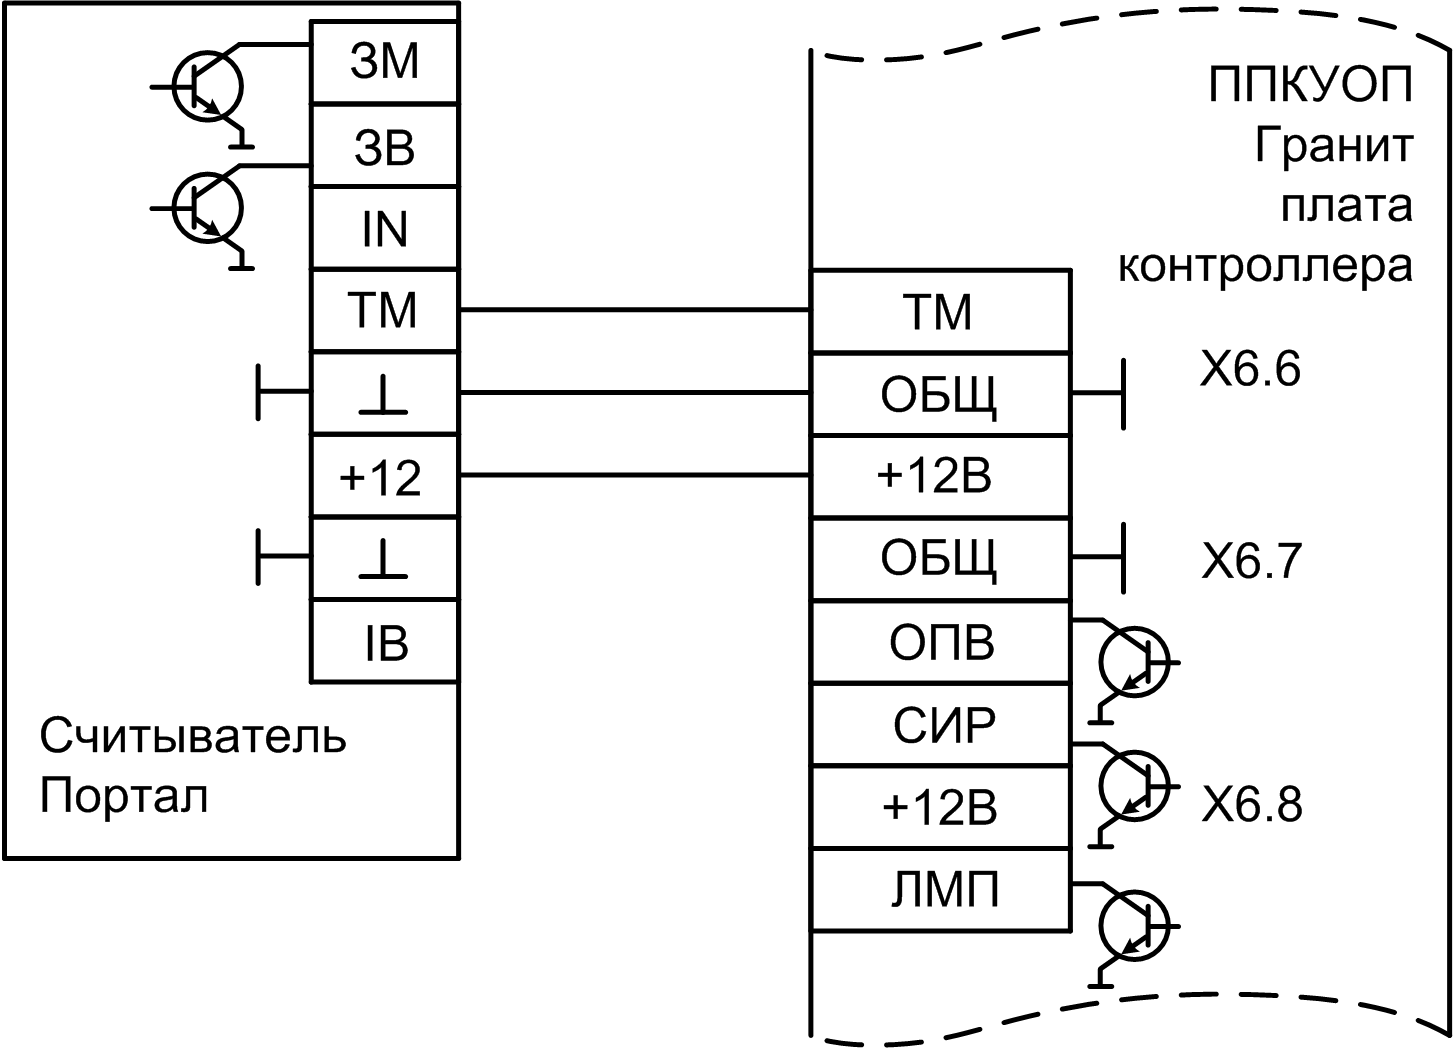 Прибор системы Лавина «Гранит-12Л» с коммуникатором. Изображение  5